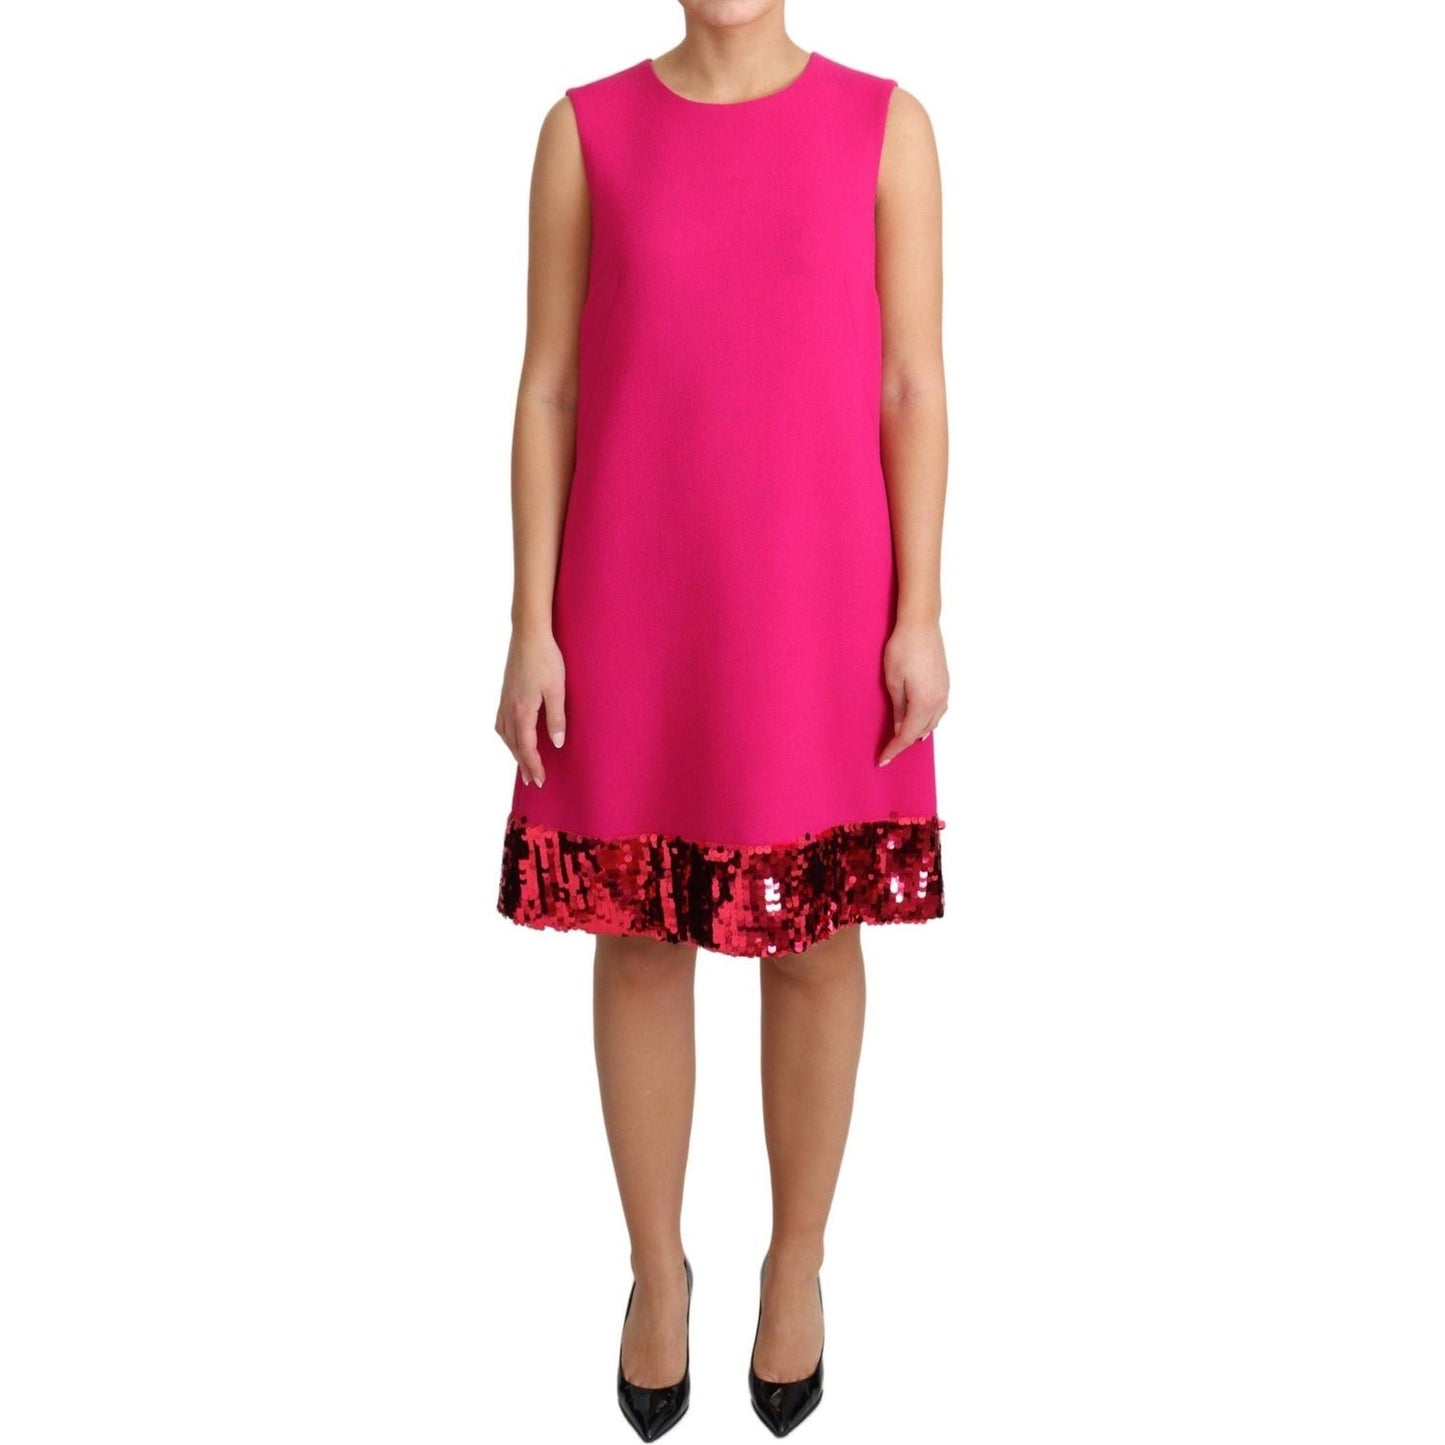 Dolce & Gabbana | Fuchsia Wool Sequin Shift Sleeveless Dress | 639.00 - McRichard Designer Brands